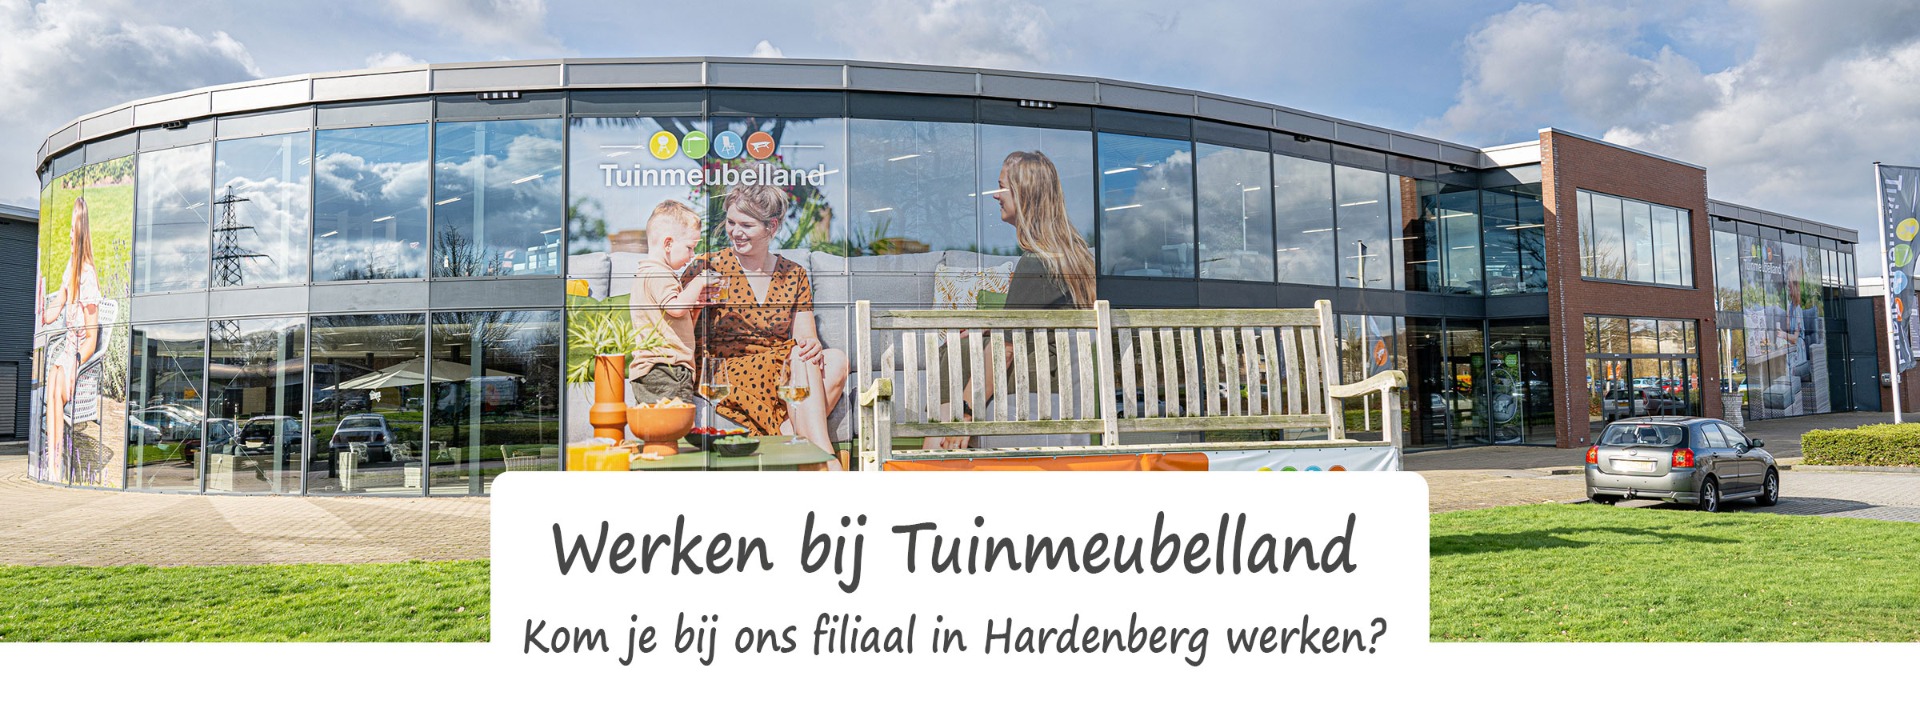 Werken bij Tuinmeubelland Hardenberg